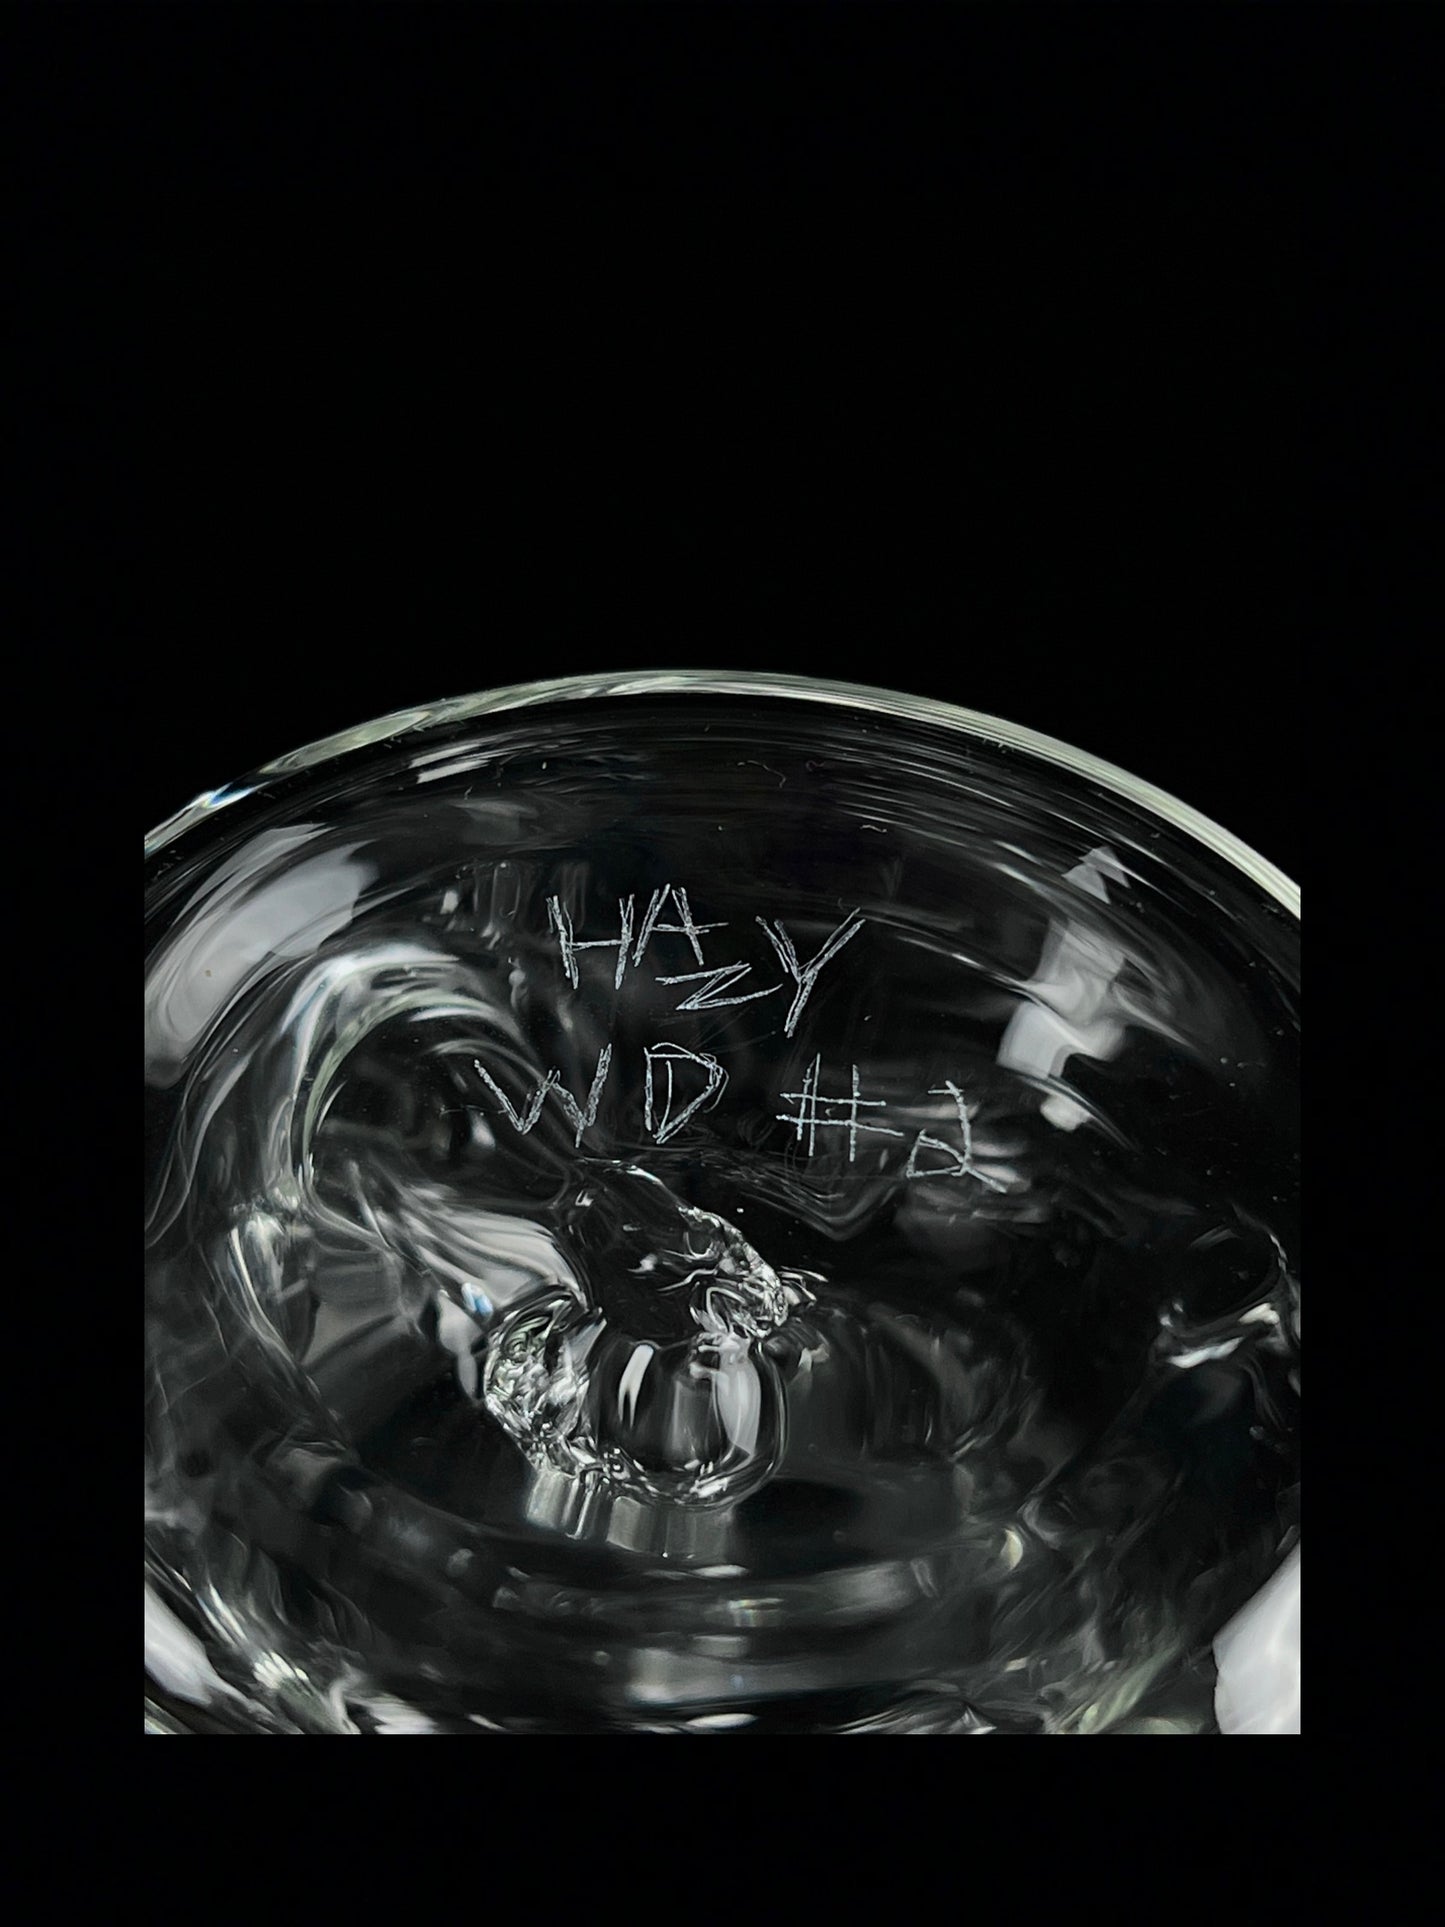 Warp Drive #2 by Hazy Glass